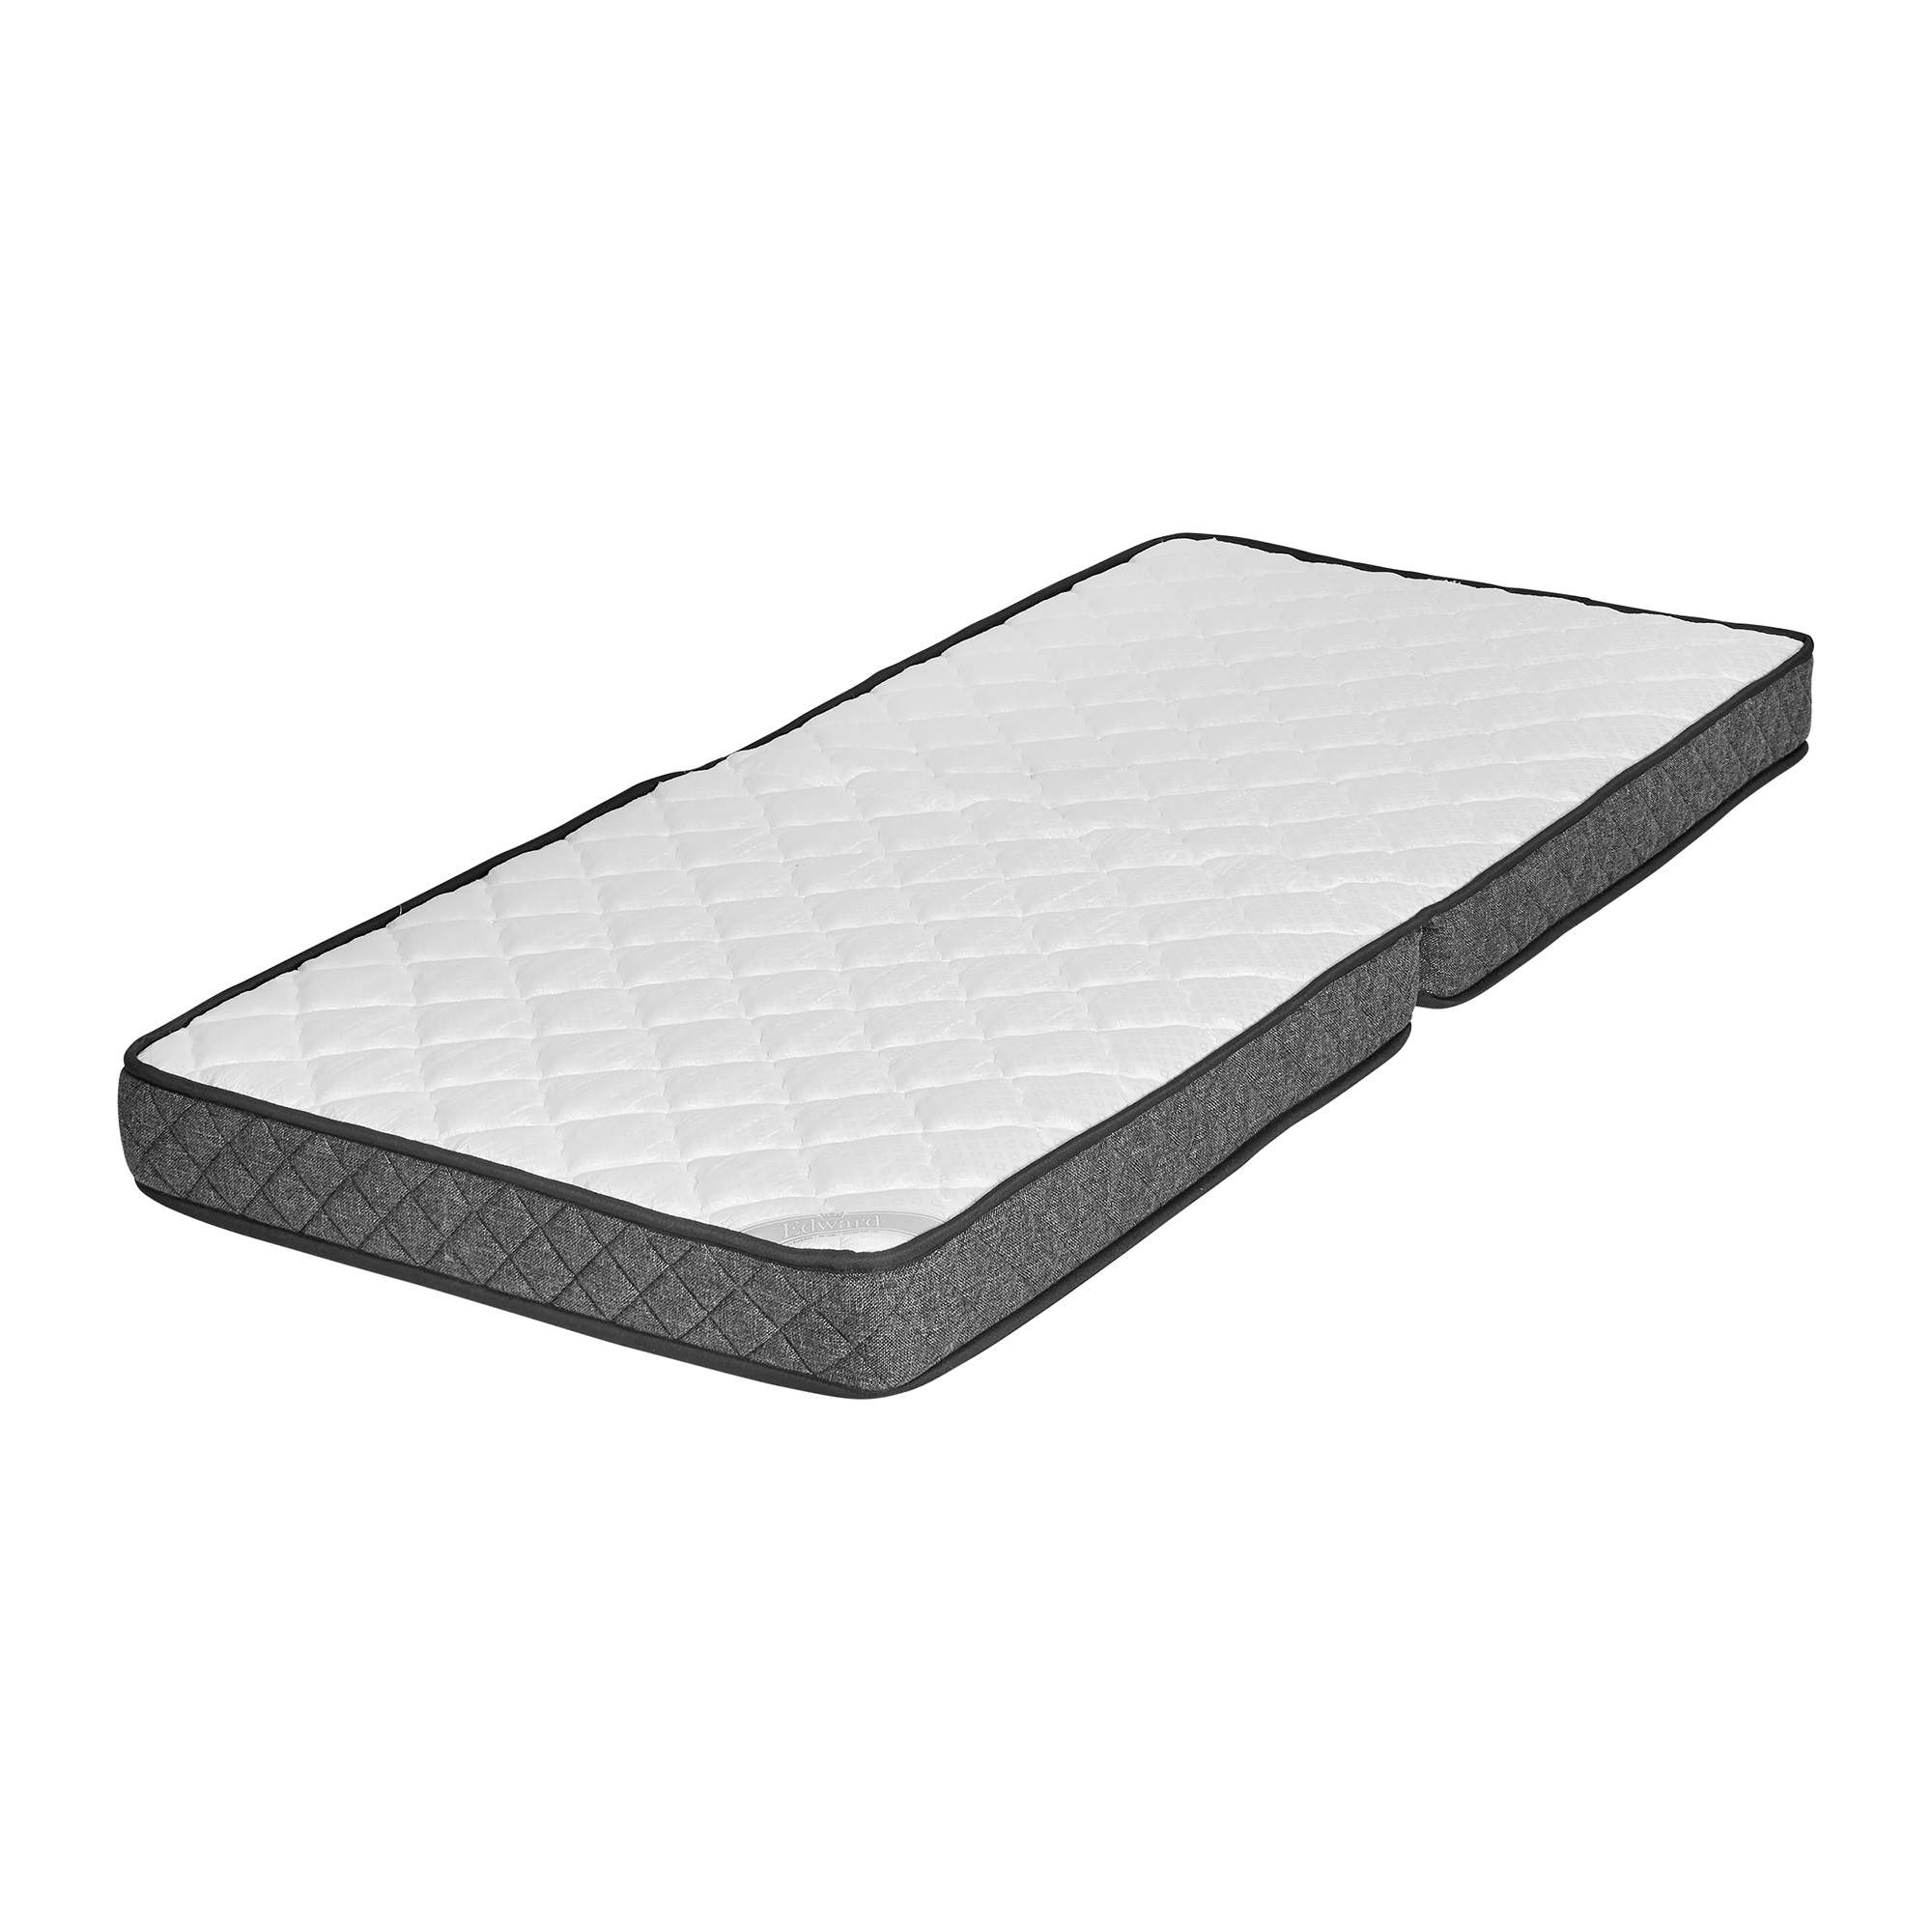 Replacement mattress for Ritz Original. Extra firm. Dark Gray